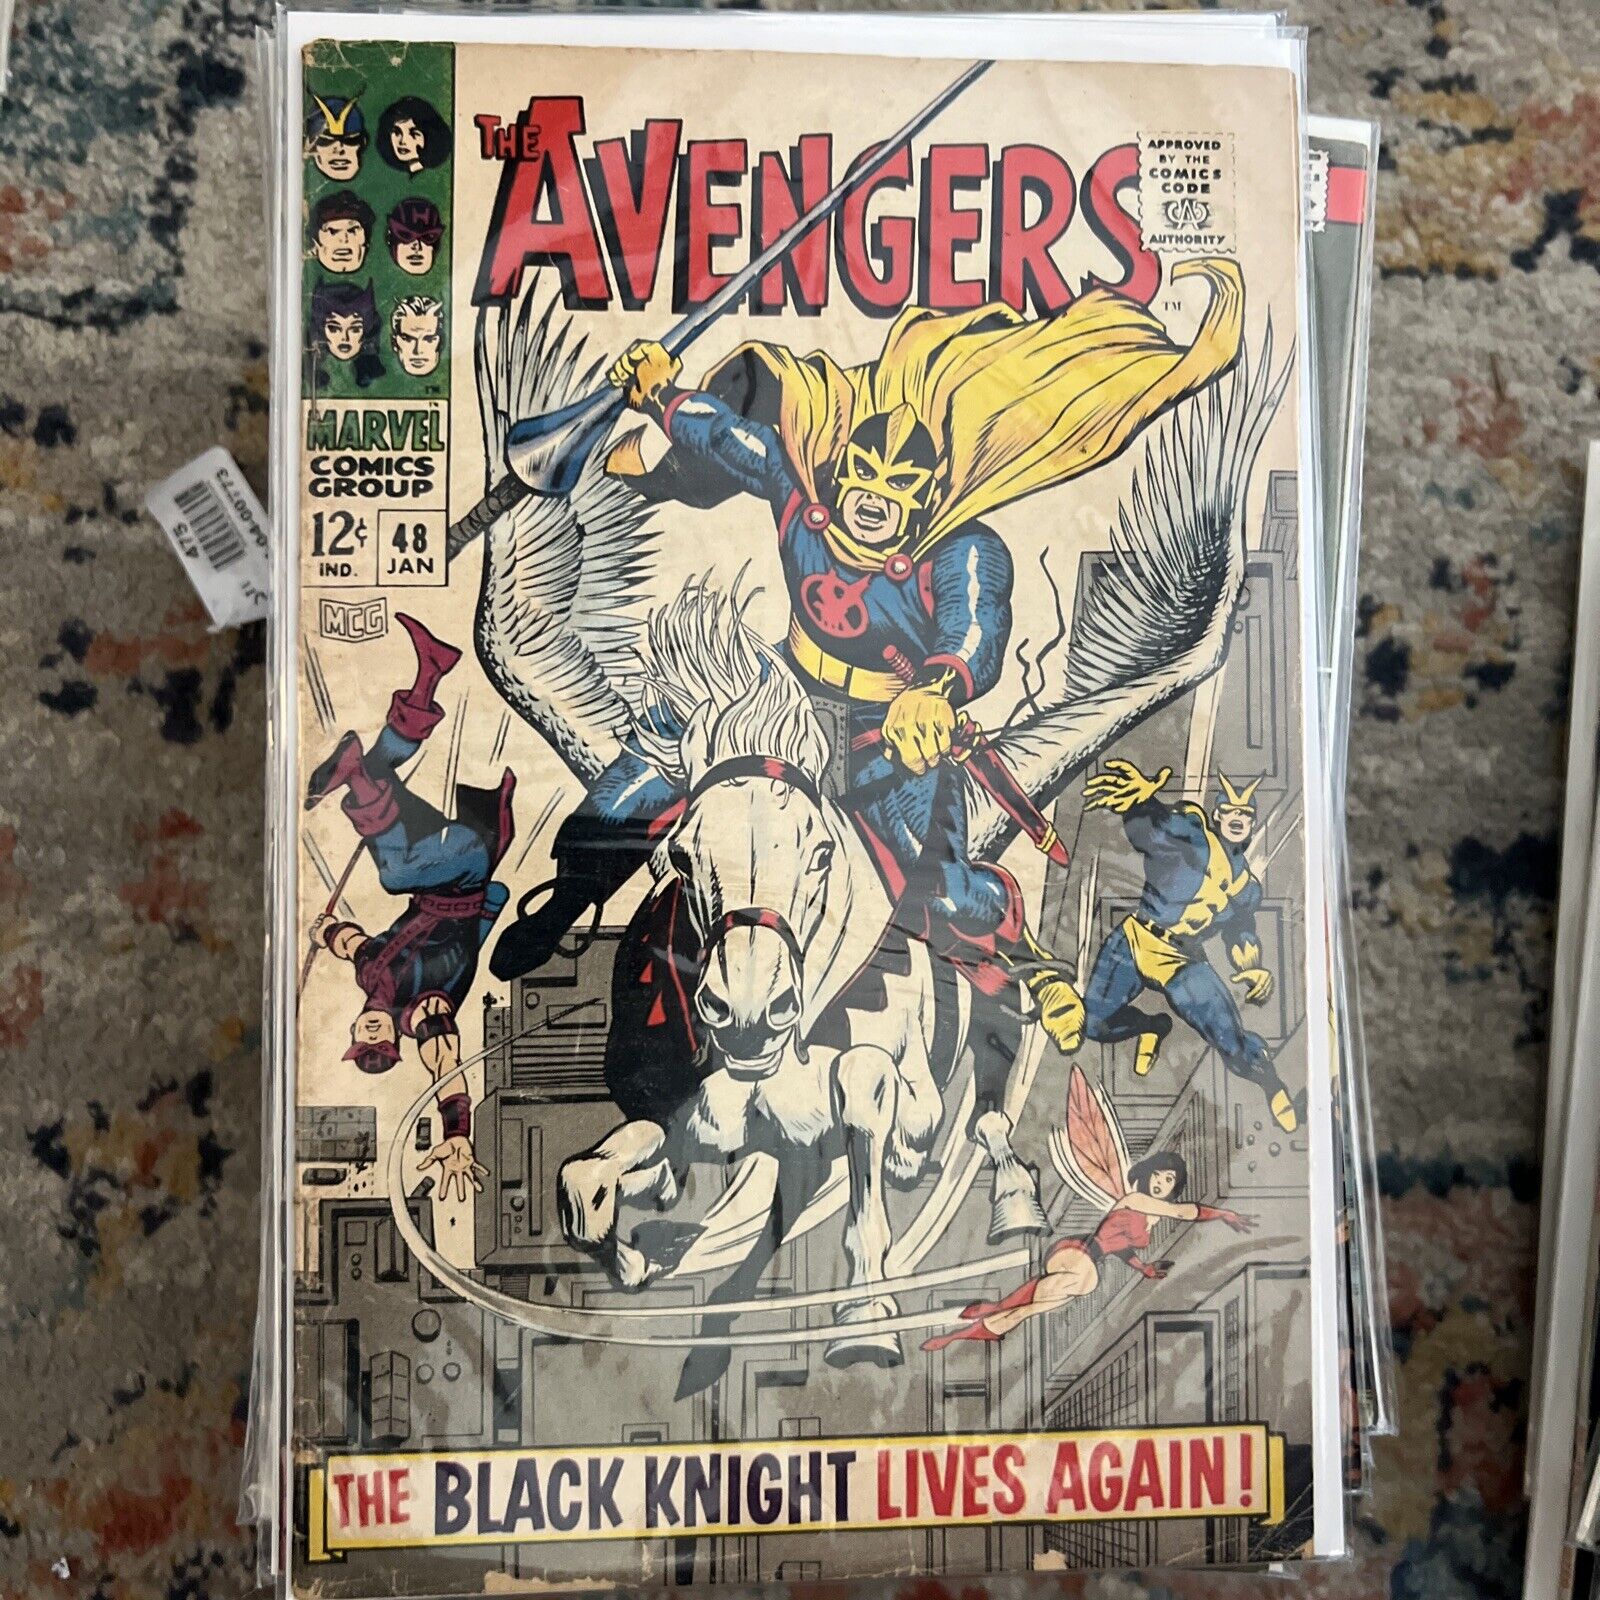 Avengers #48 (Marvel Comics 1968) 1st App. of The Black Knight Dane Whitman